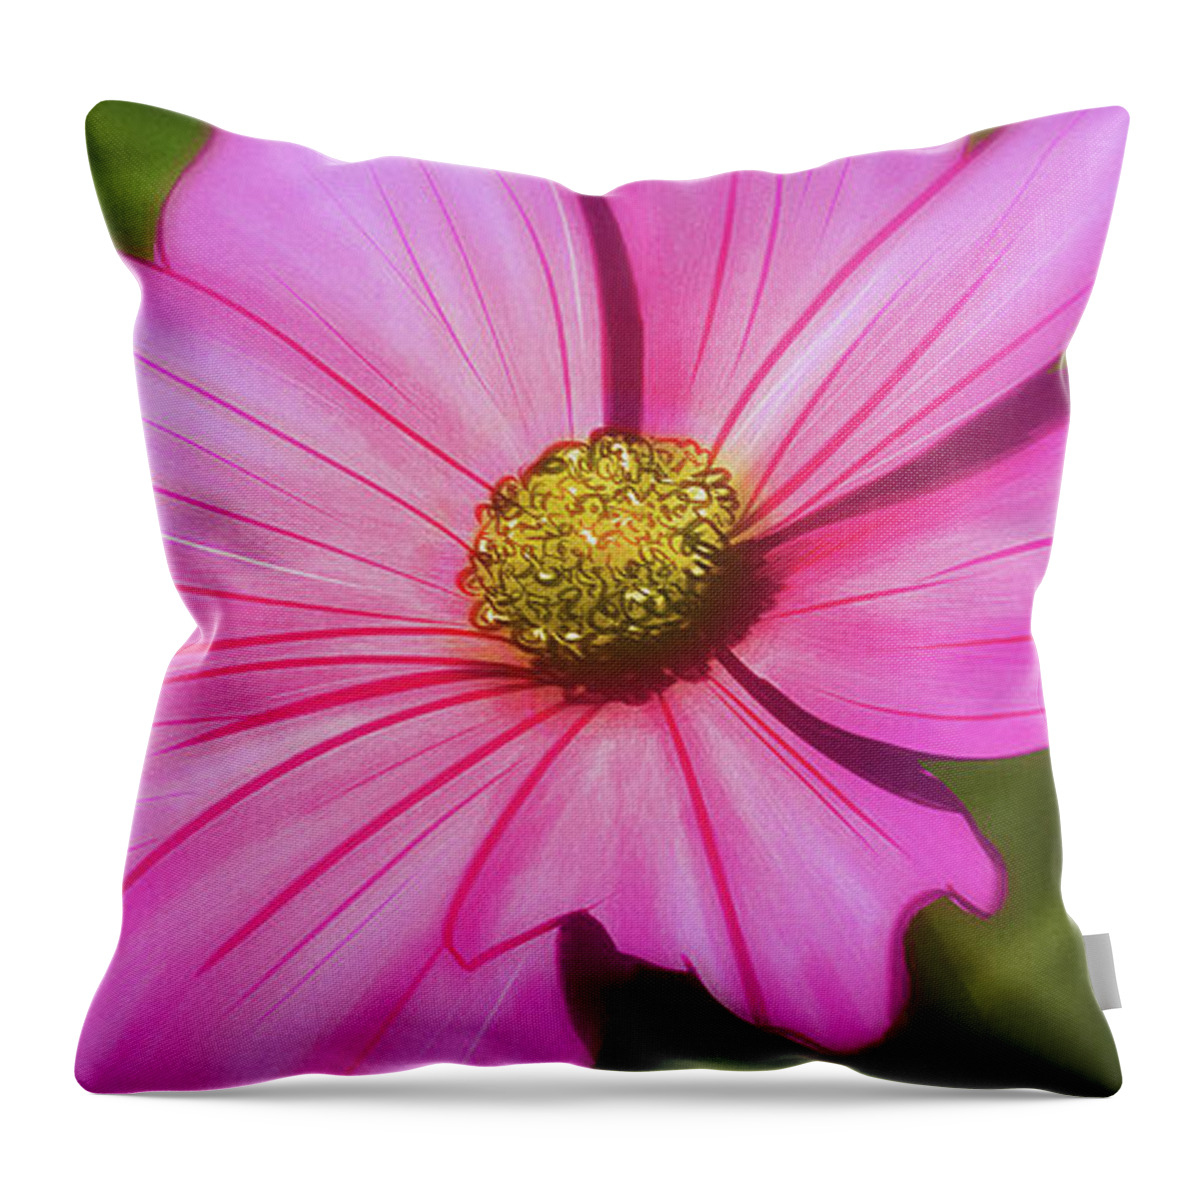 Flowers Throw Pillow featuring the digital art Art - Pink Flower by Matthias Zegveld